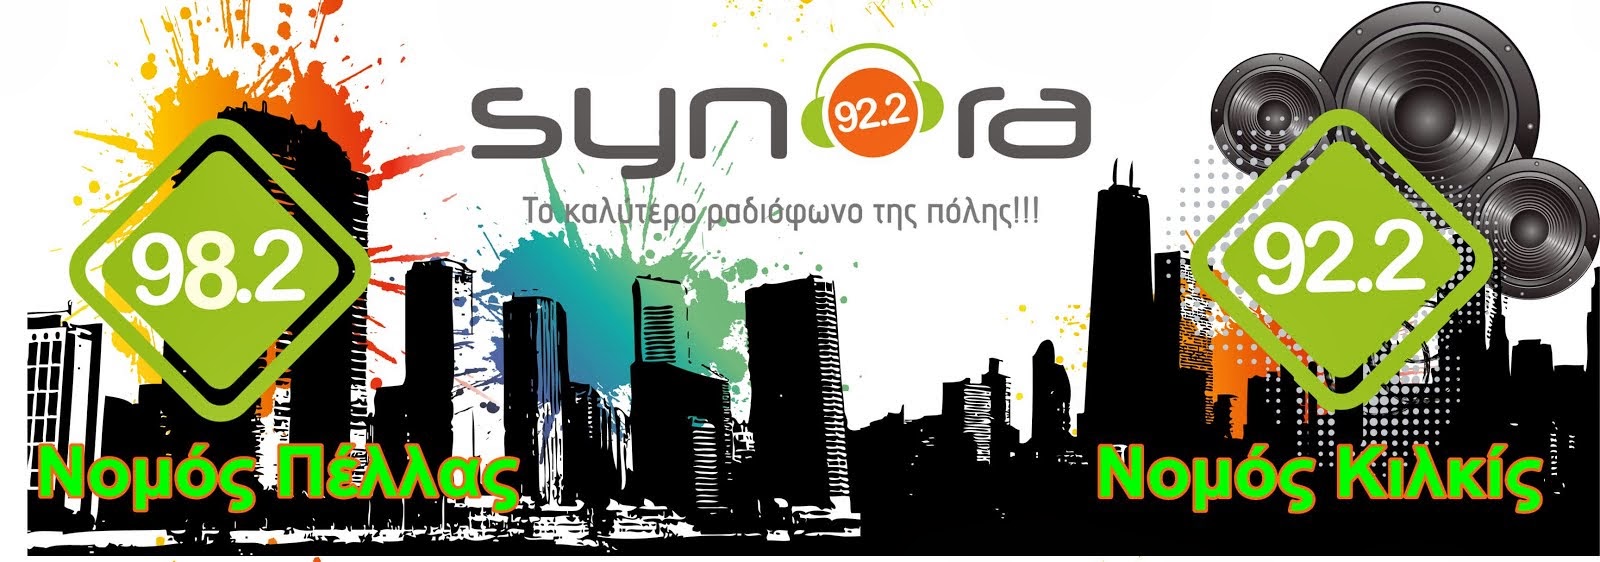 Synora FM